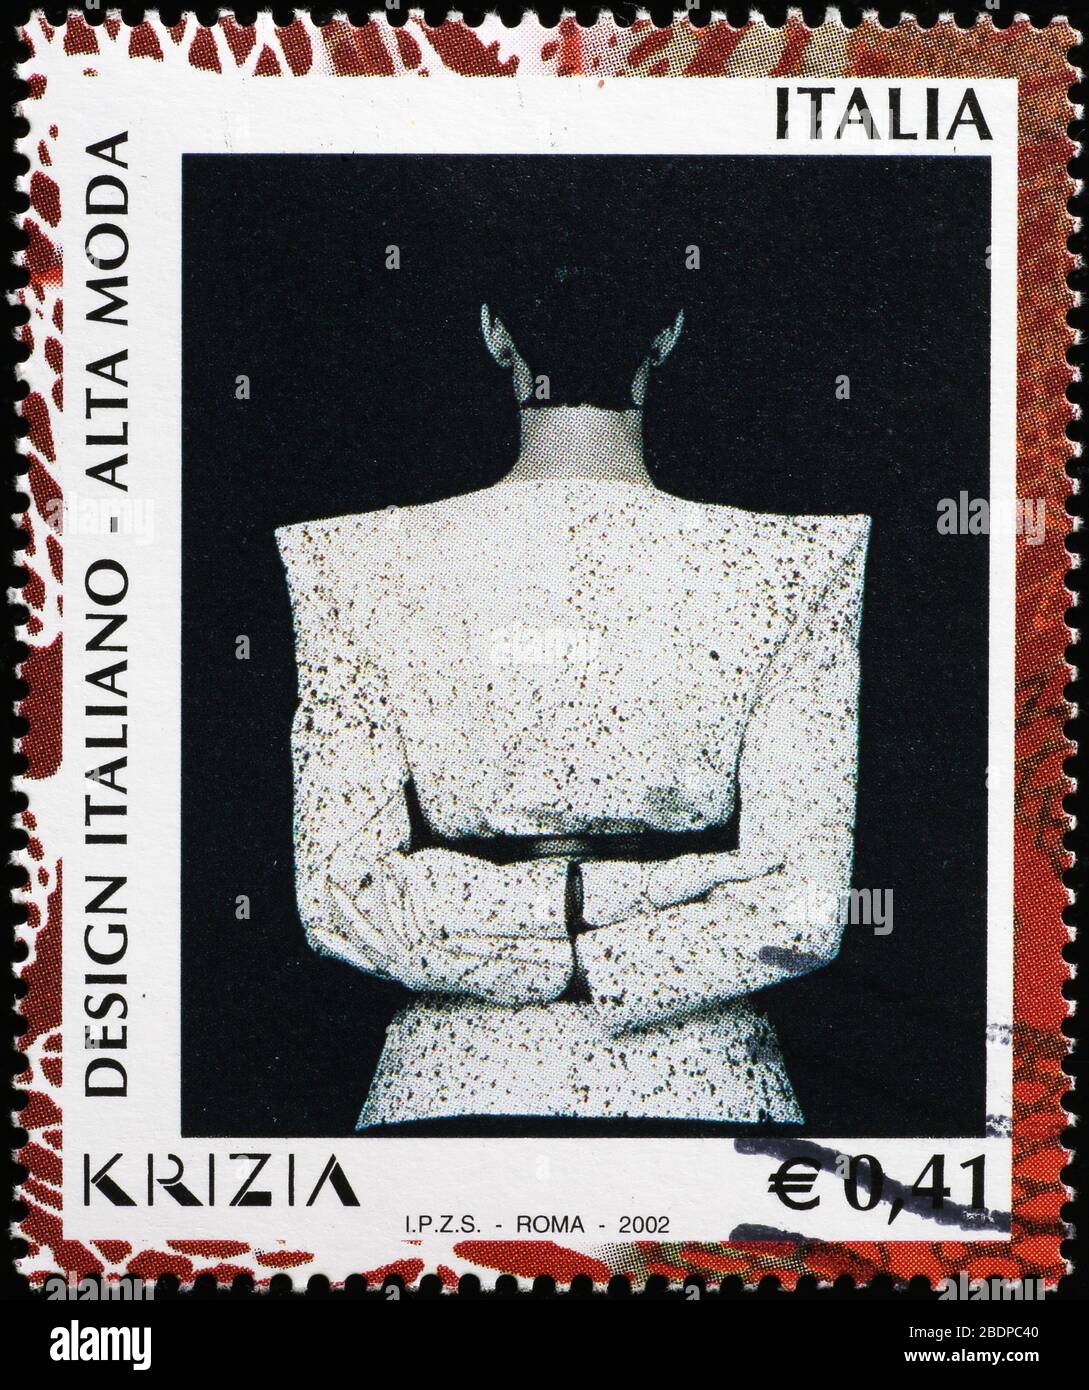 Robe conçue par Krizia sur un timbre-poste italien Banque D'Images